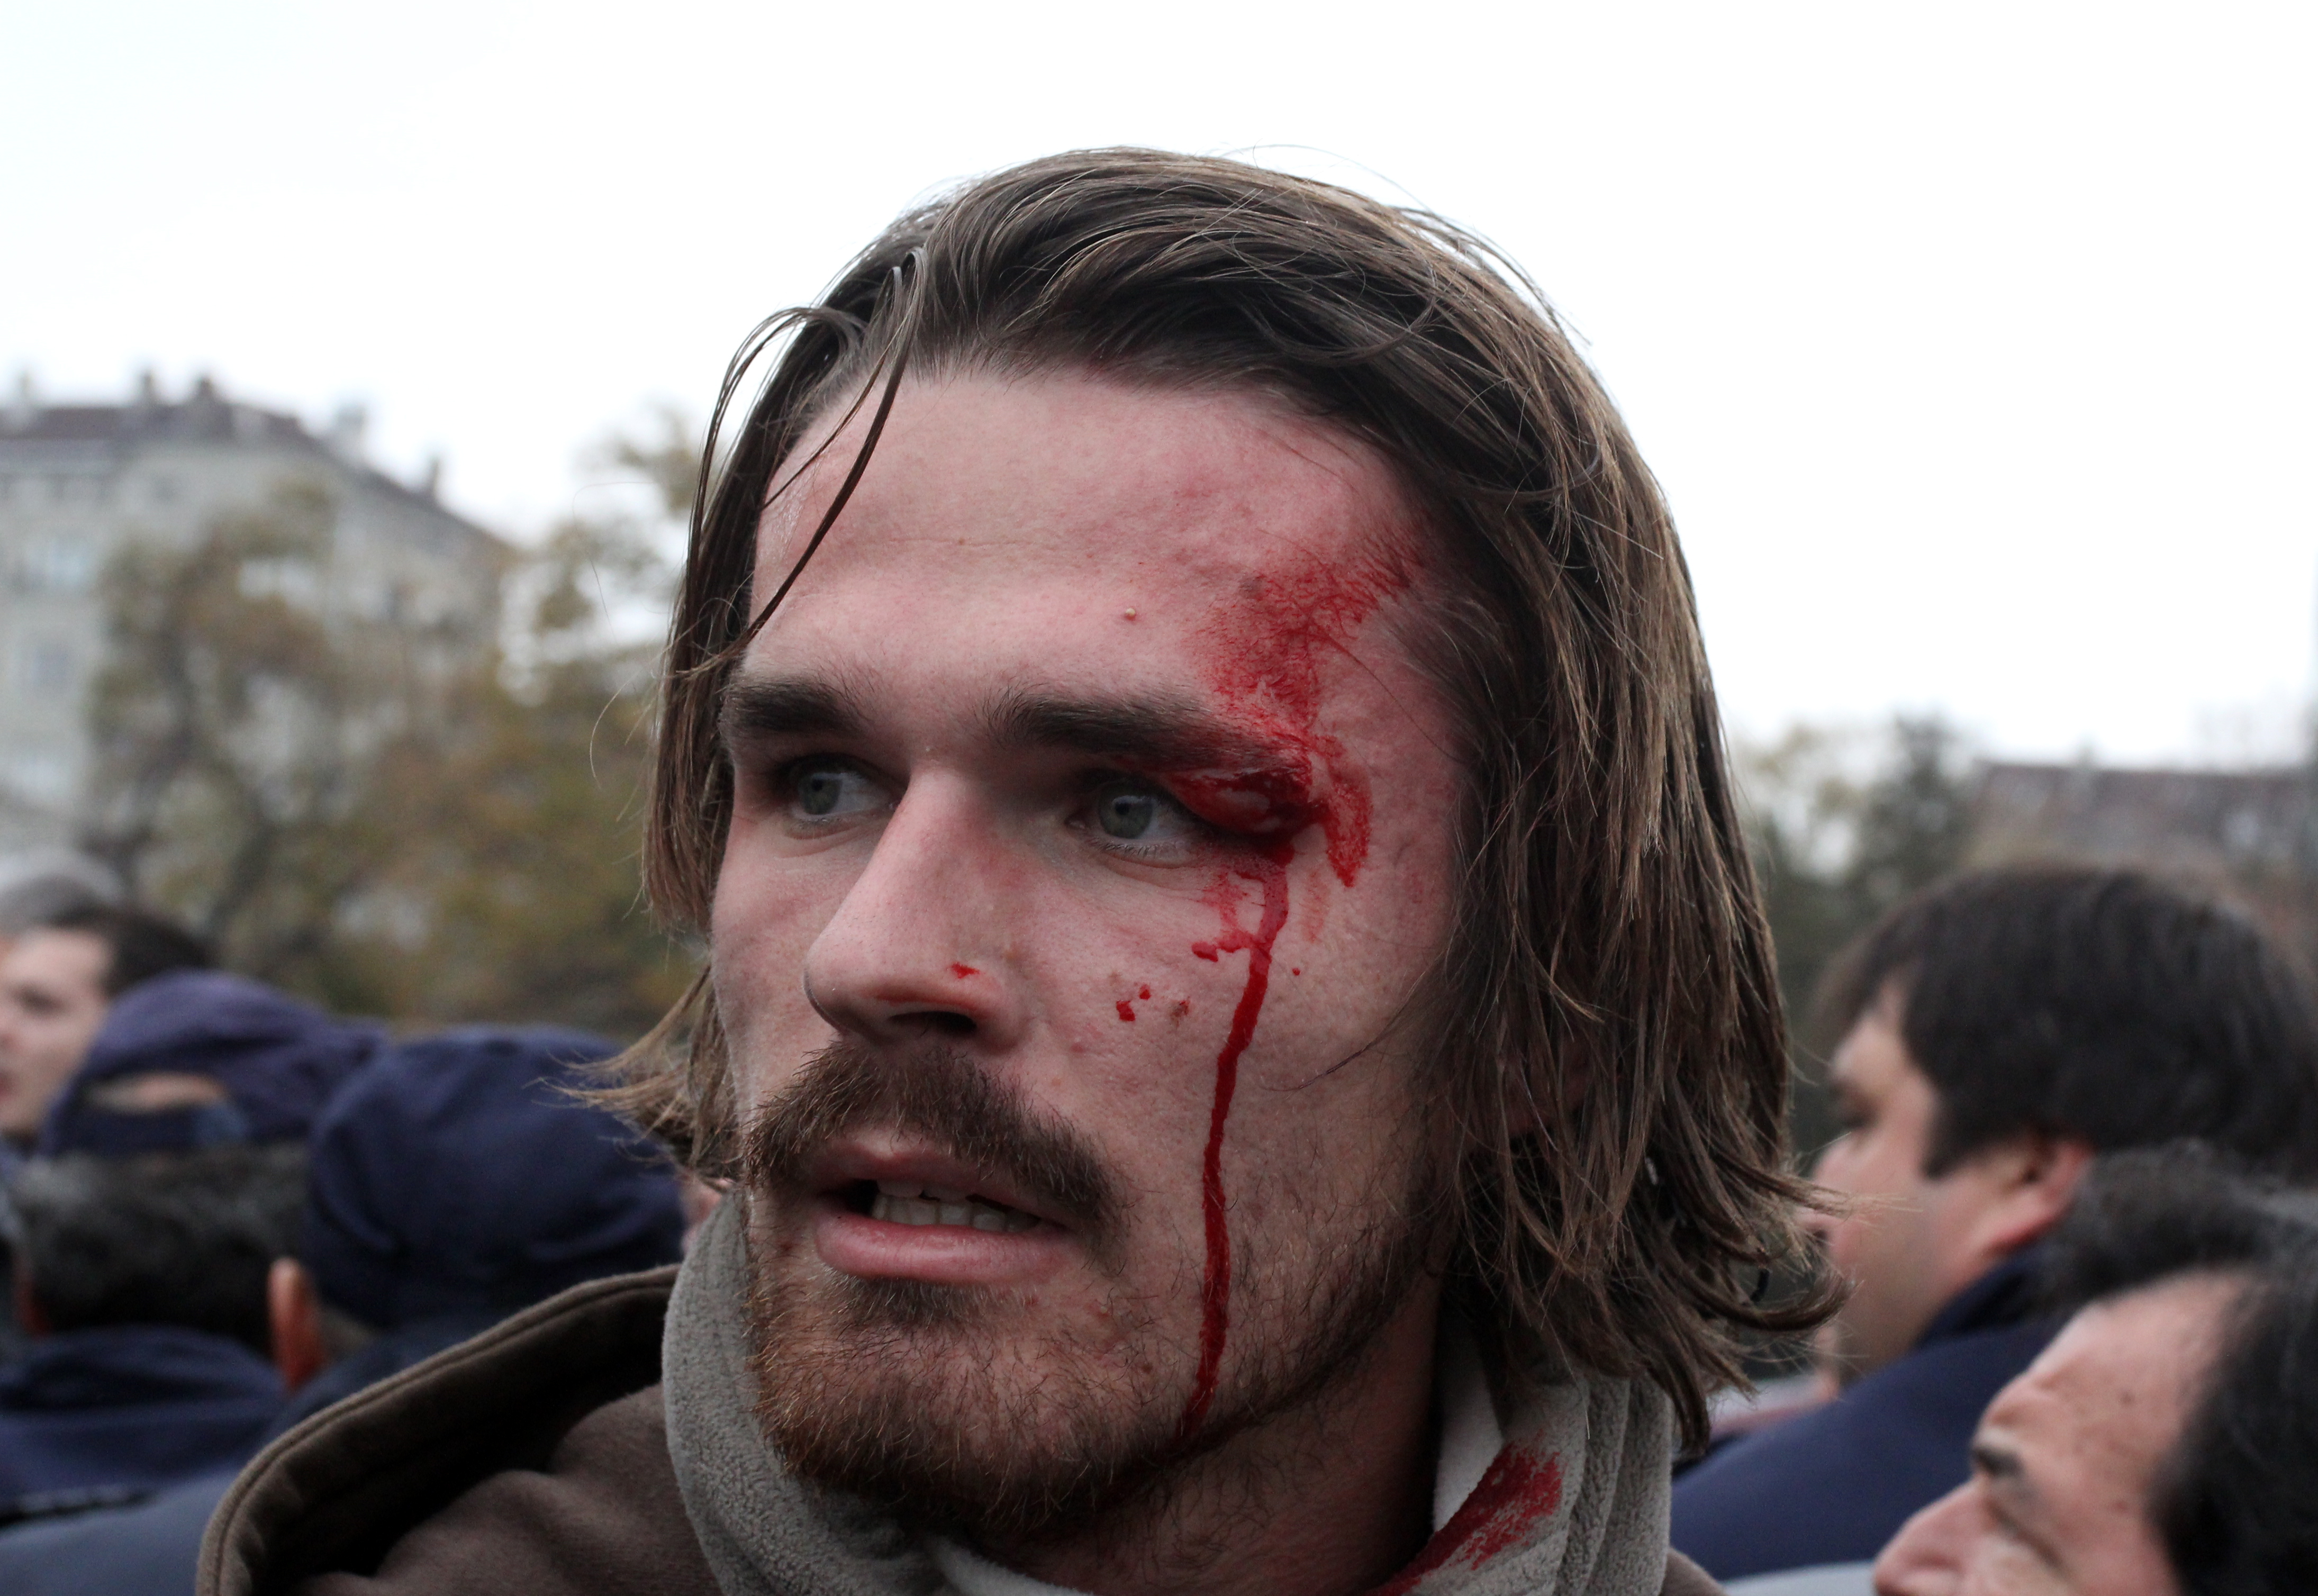 Александър - студент по английска филология в СУ, беше ранен по време на протестите пред парламента